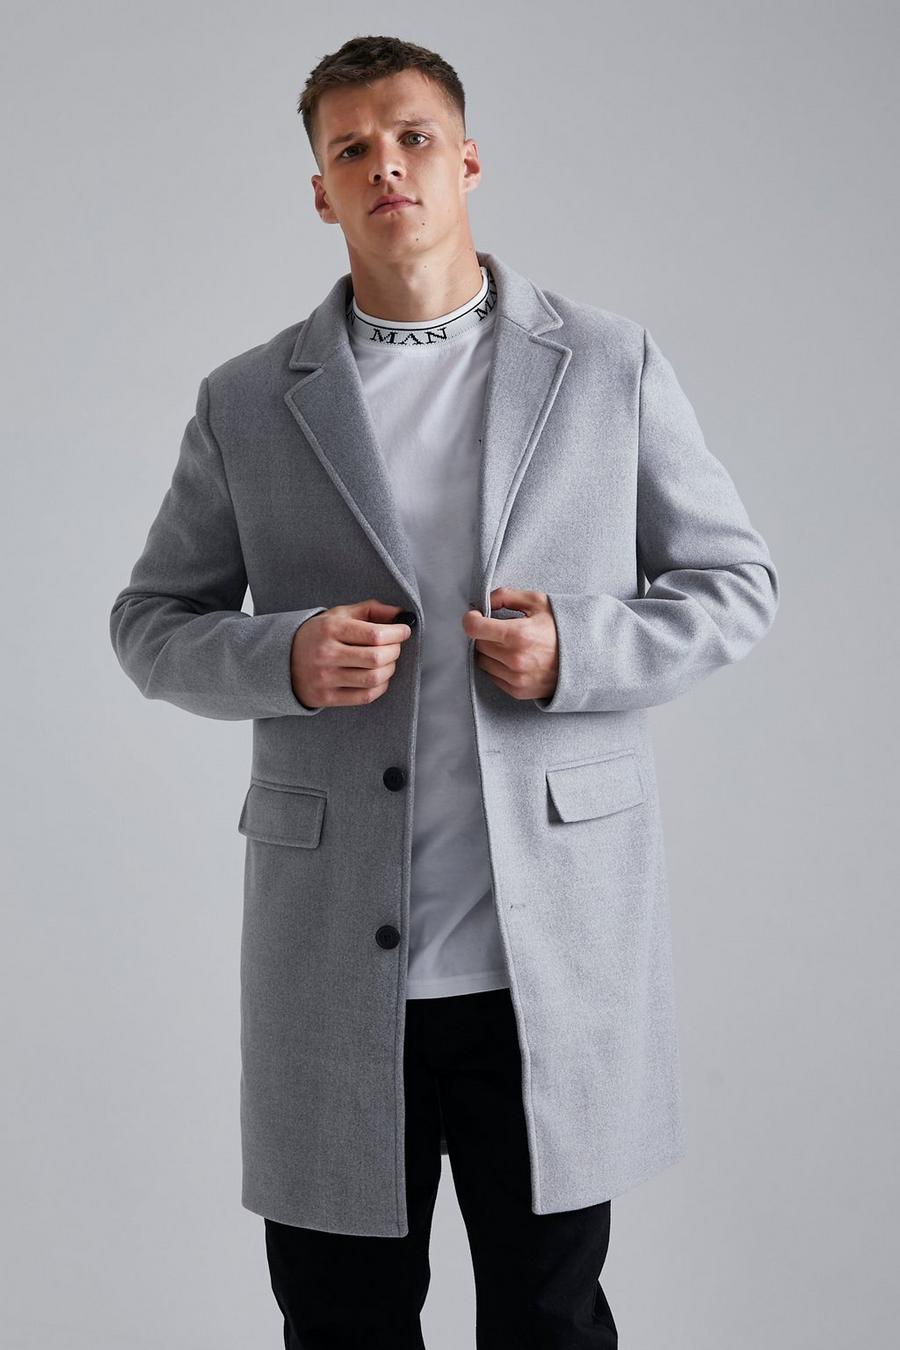 אפור gris מעיל עליון במראה צמר עם רכיסה אחת, לגברים גבוהים